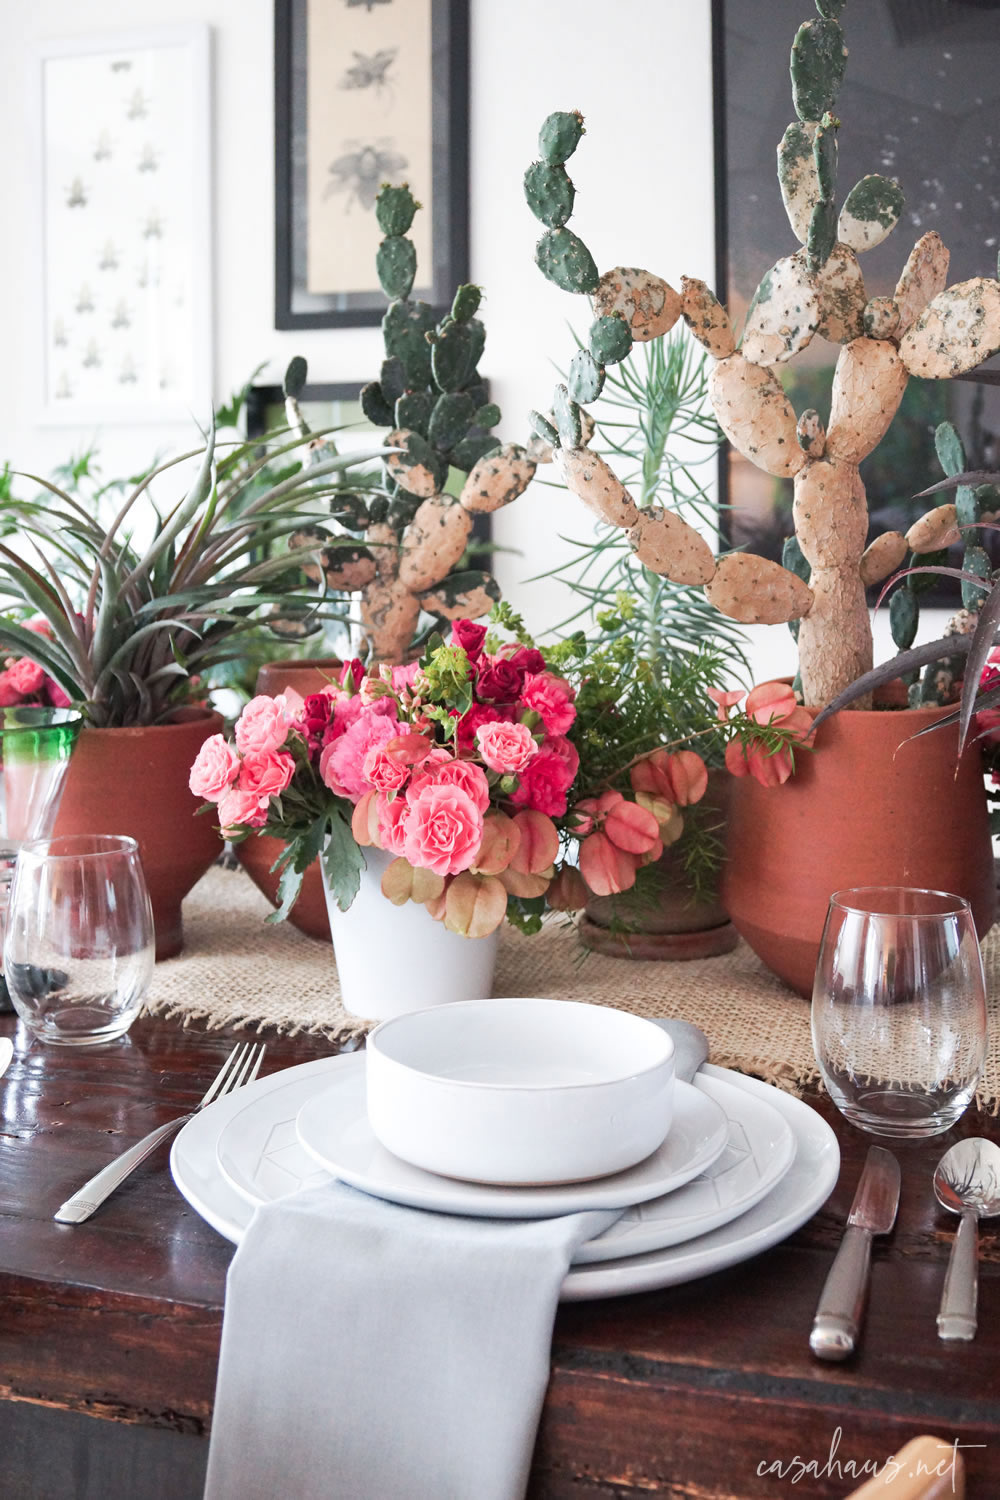 Platos puestos en mesa con cactus y flores rosas